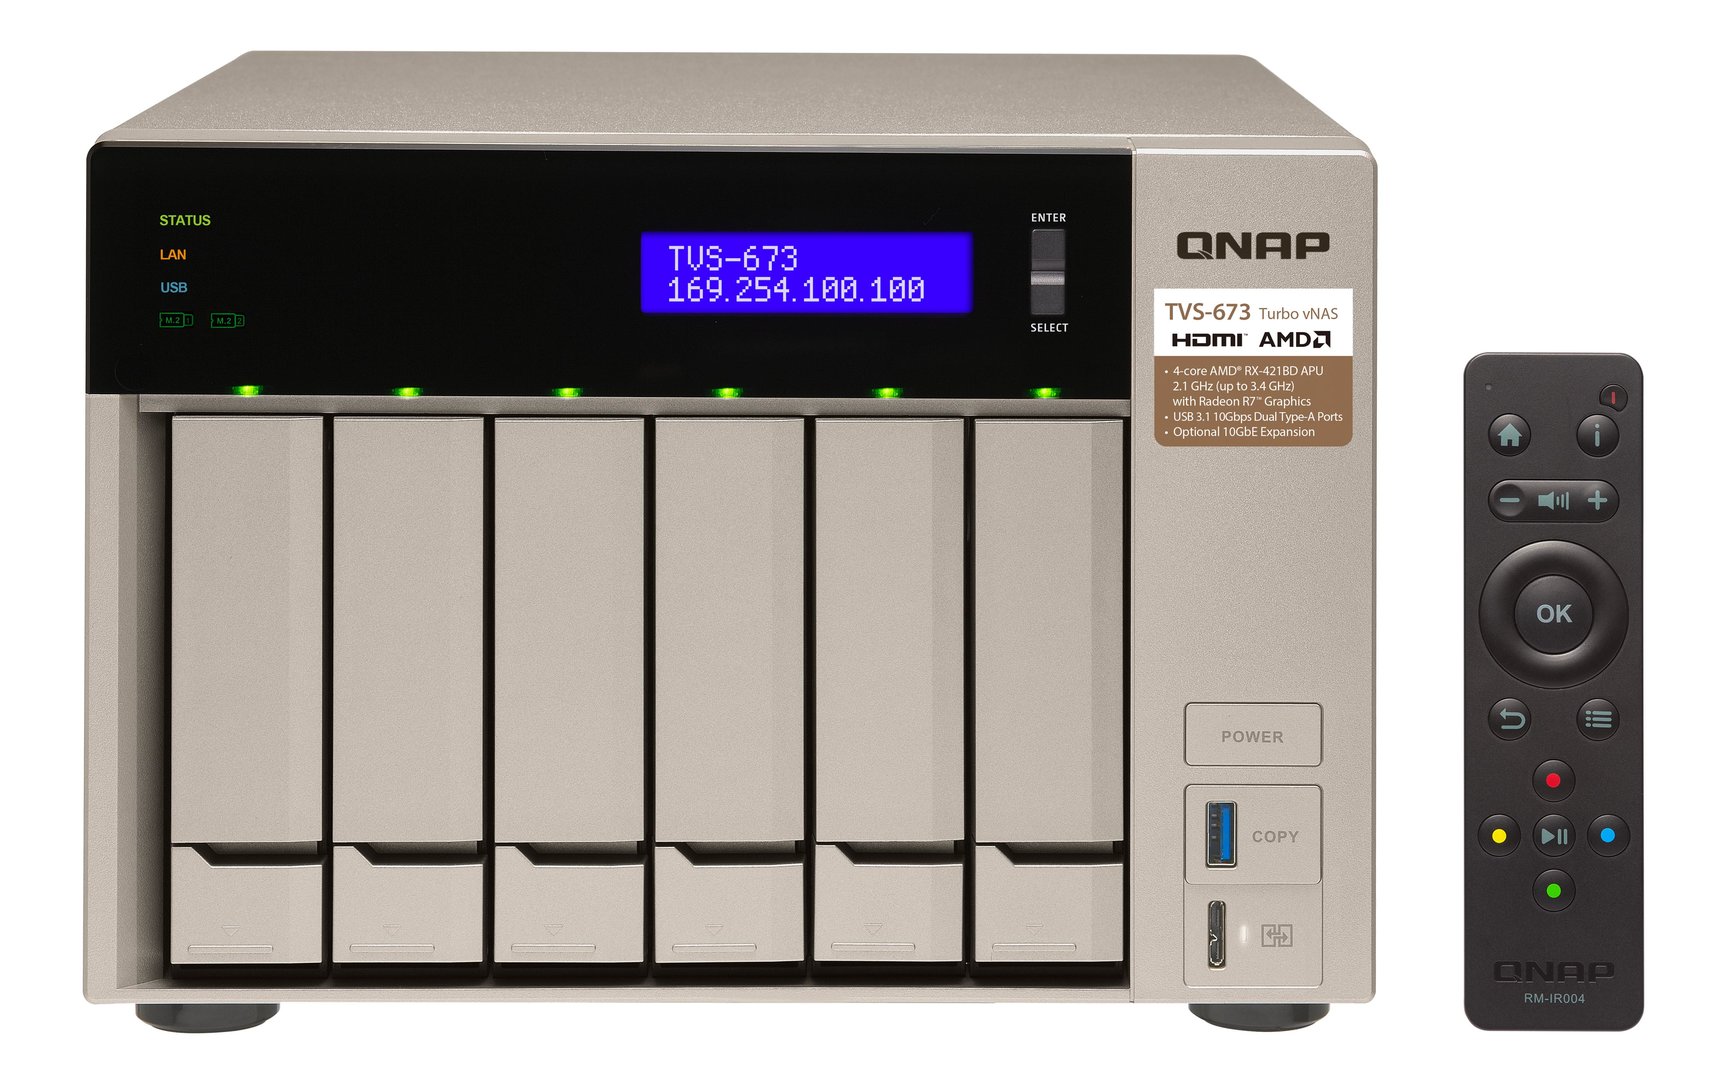 QNAP TVS-673